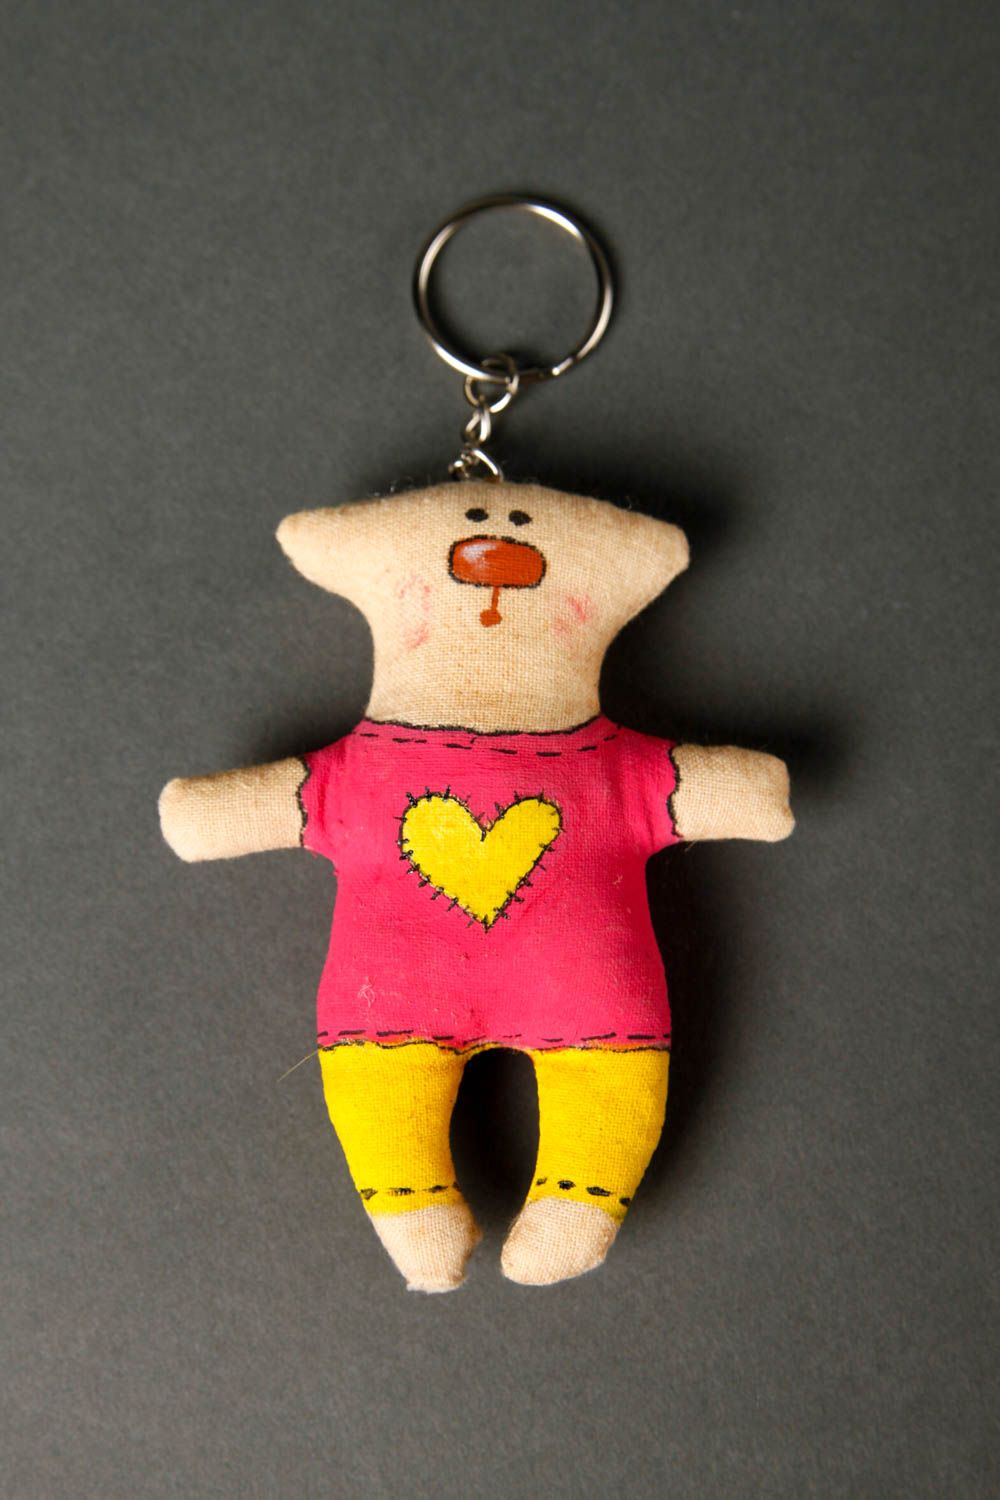 Handmade keychain designer keychain unusual souvenir gift ideas gift for kids photo 3